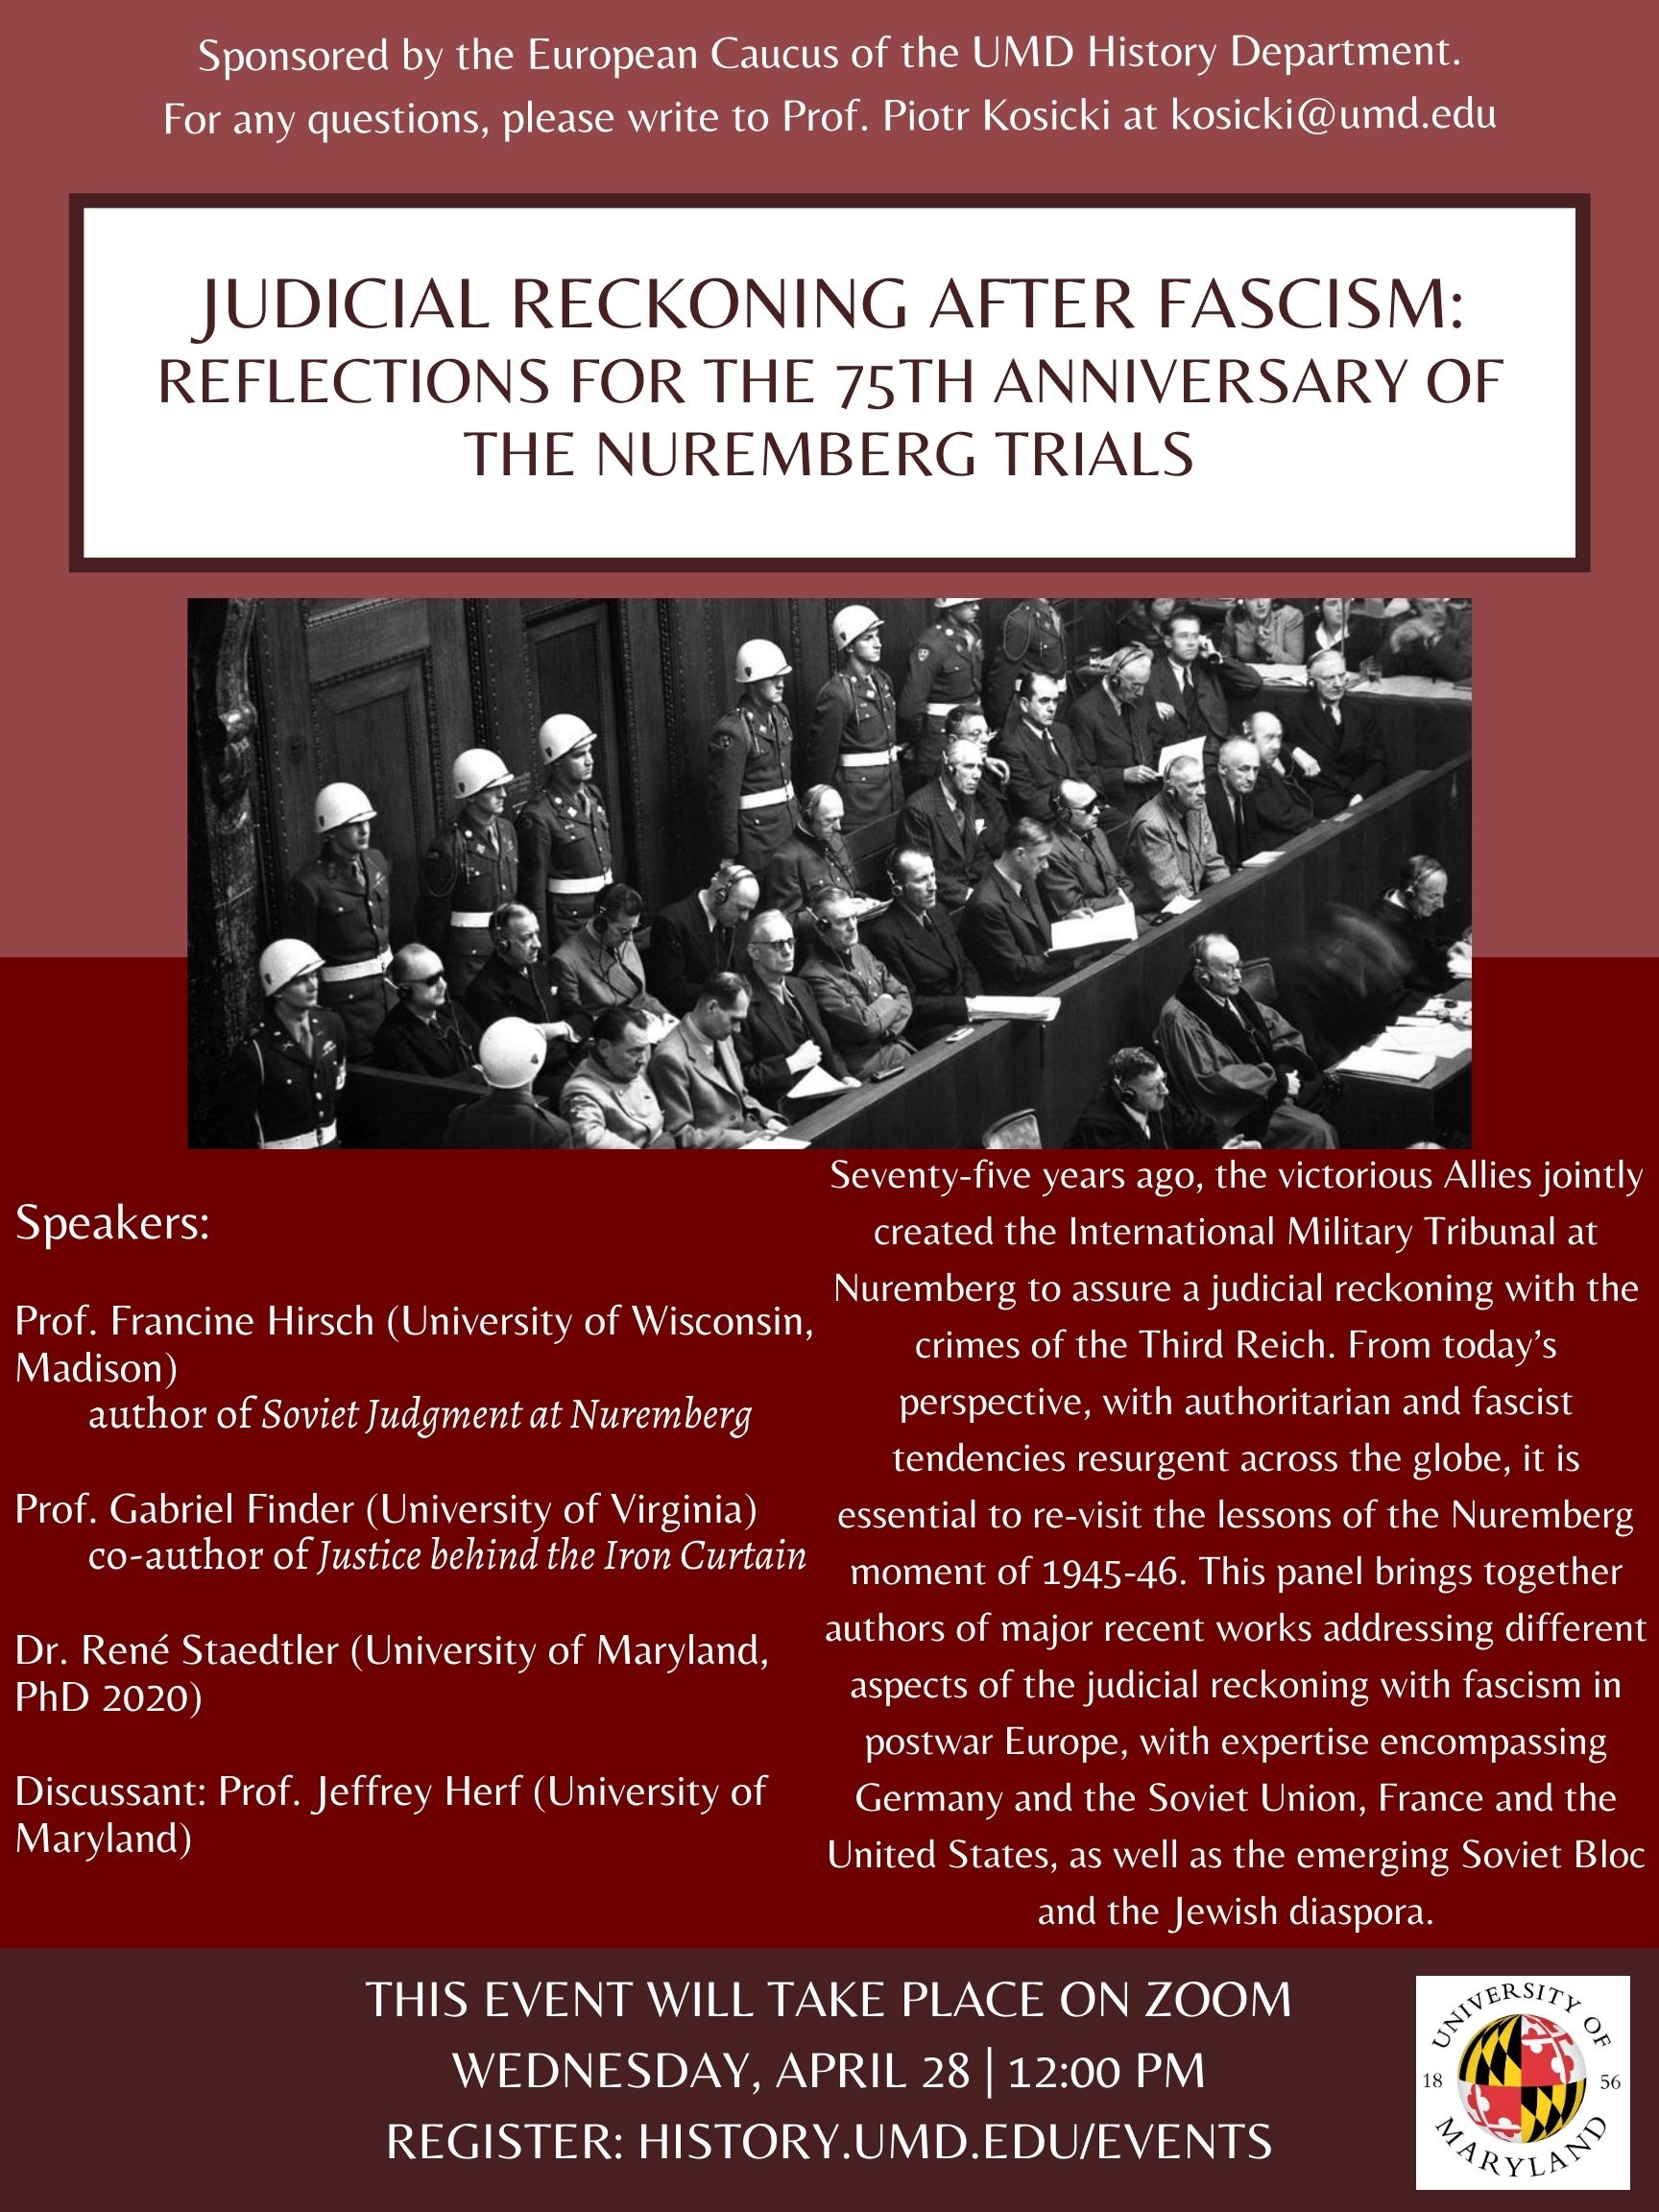 Flyer for HIST Event "Judicial Reckoning after Fascism" on April 28